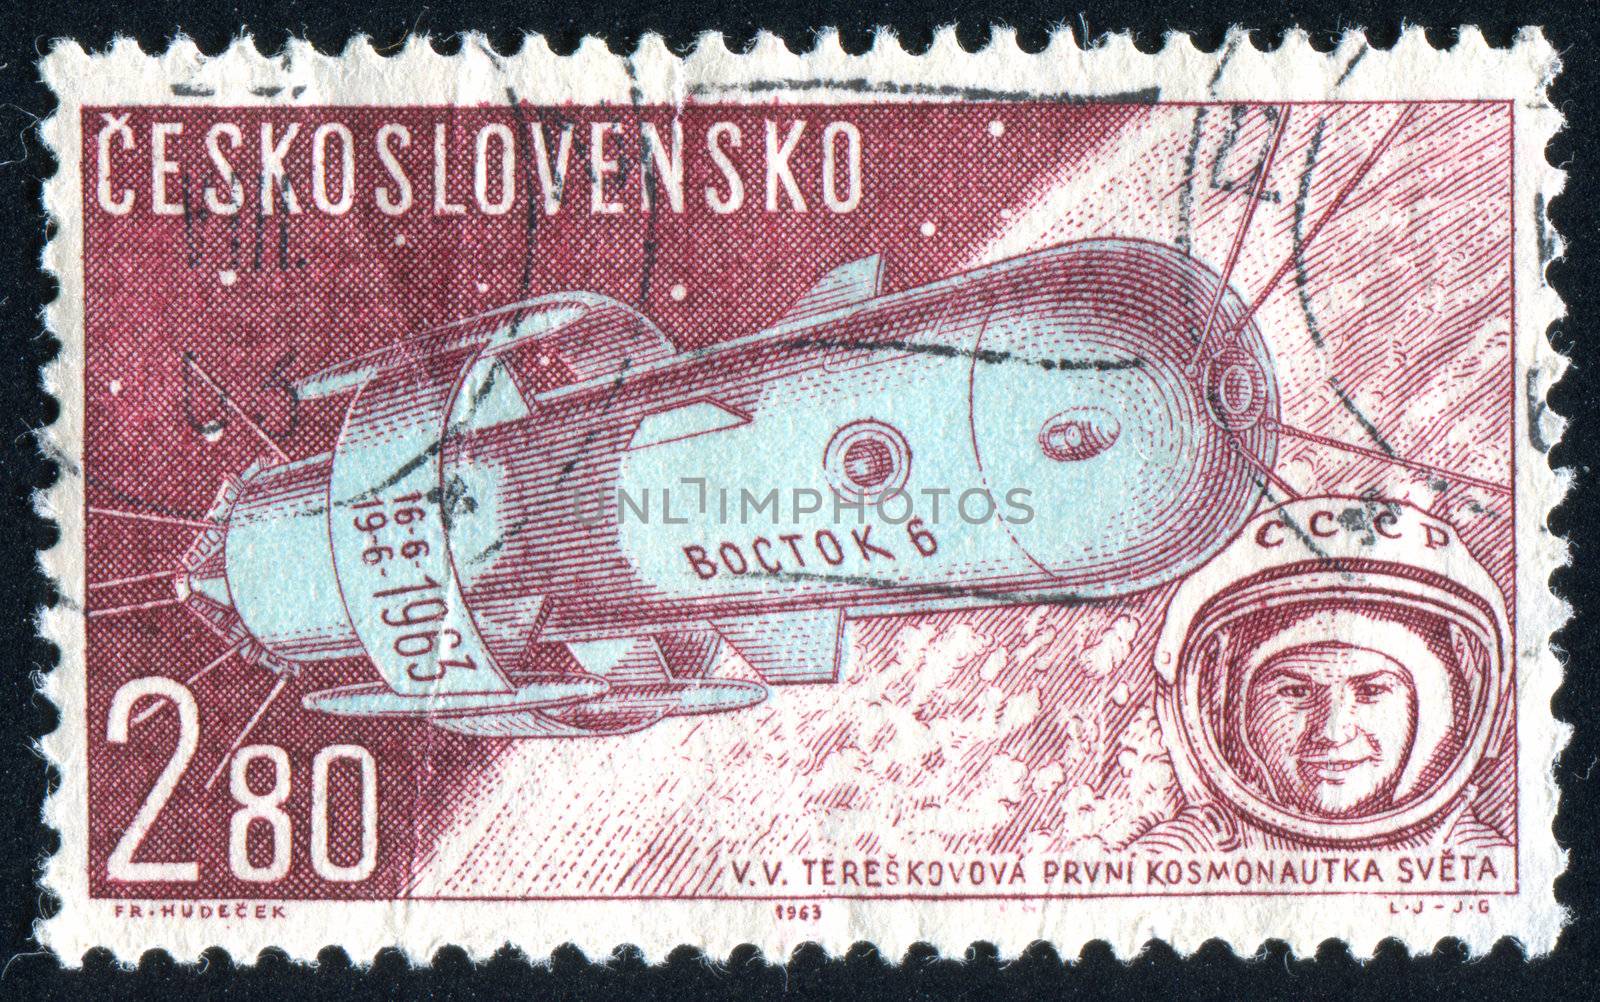 CZECHOSLOVAKIA - CIRCA 1962: stamp printed by Czechoslovakia, shows Soviet Spaceship Vostok, circa 1962